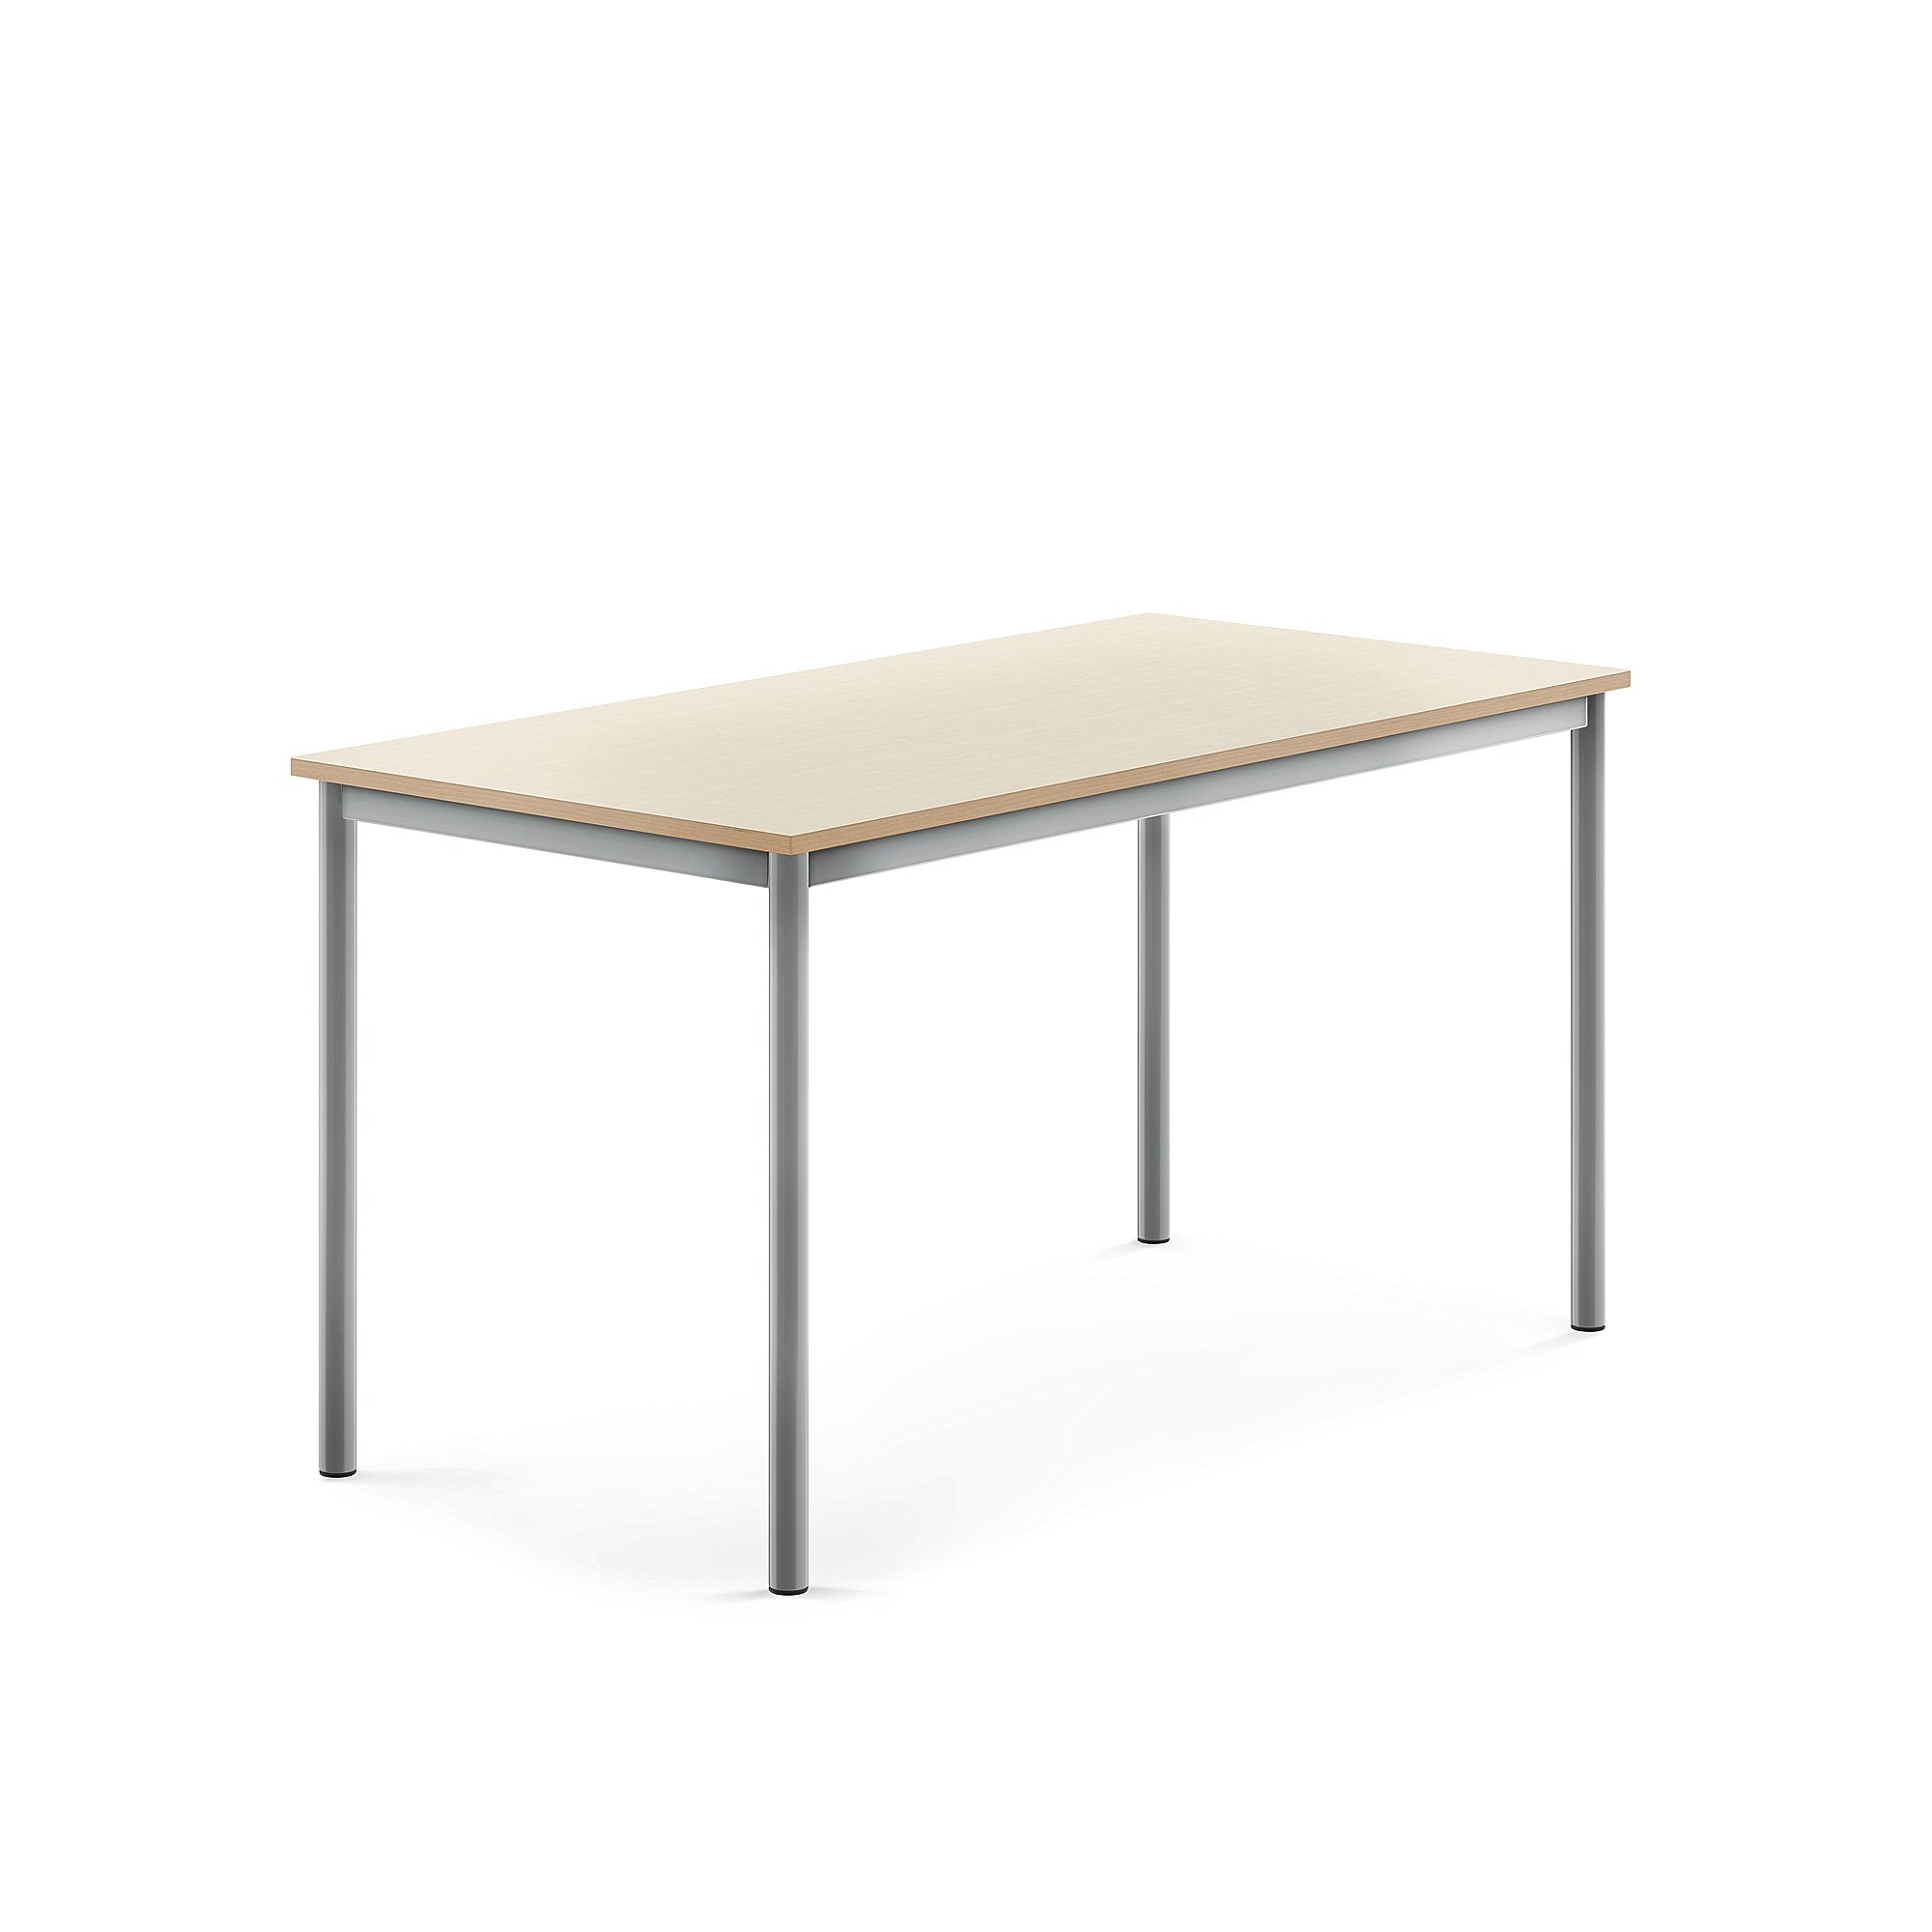 Stůl BORÅS, 1400x700x720 mm, stříbrné nohy, HPL deska, bříza